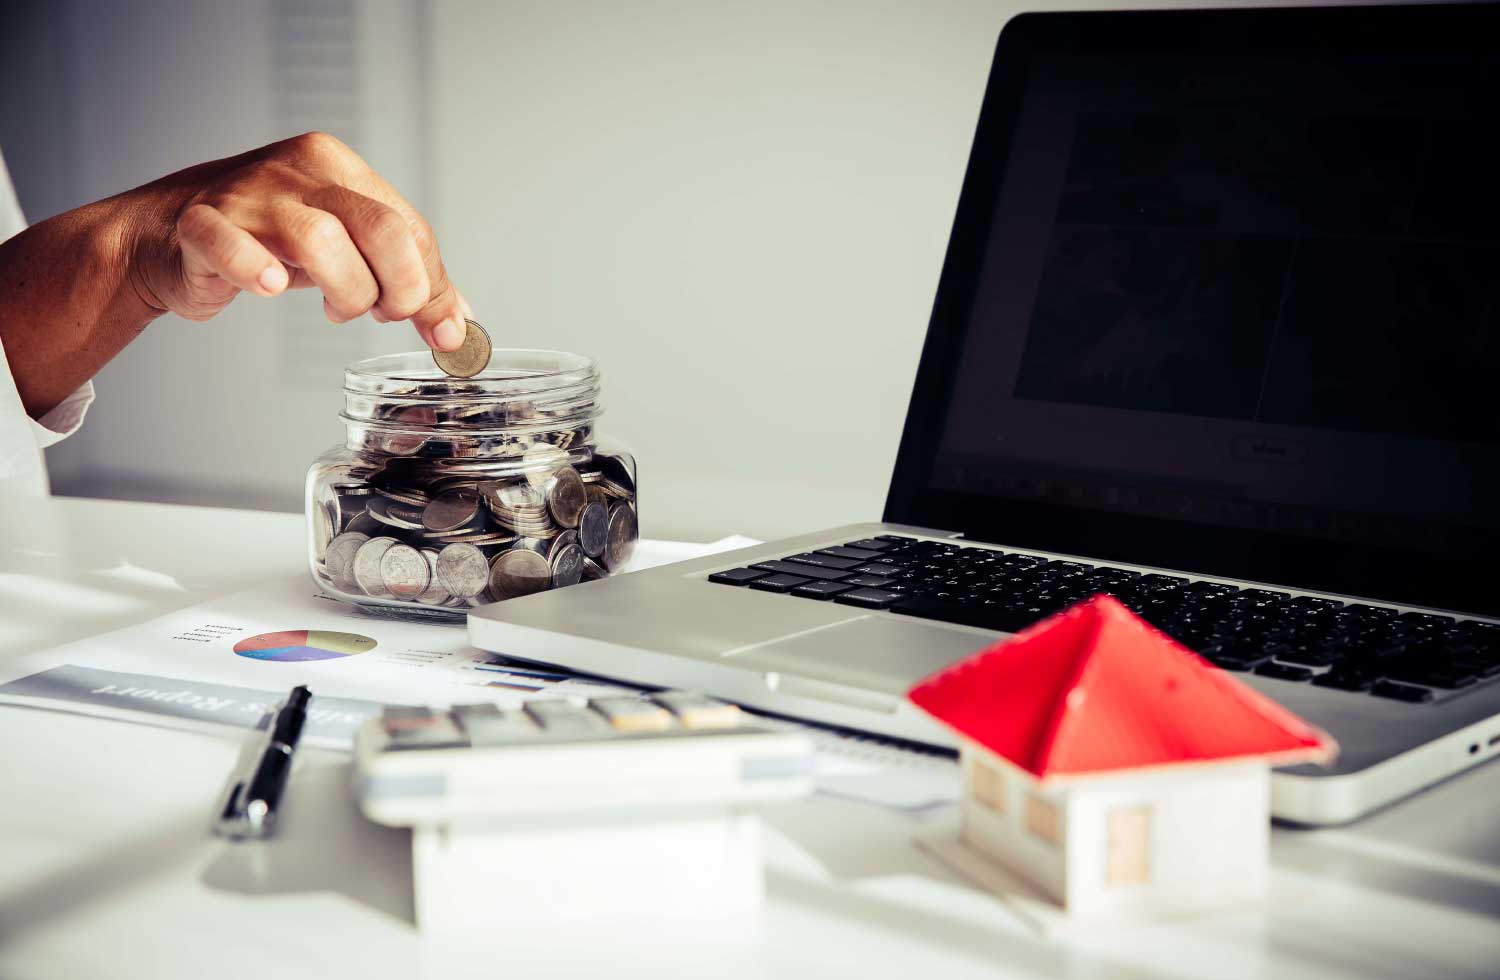 Imagen de una mano llenando un embase de vidrio con monedas representa el seguro de renta vitalicia